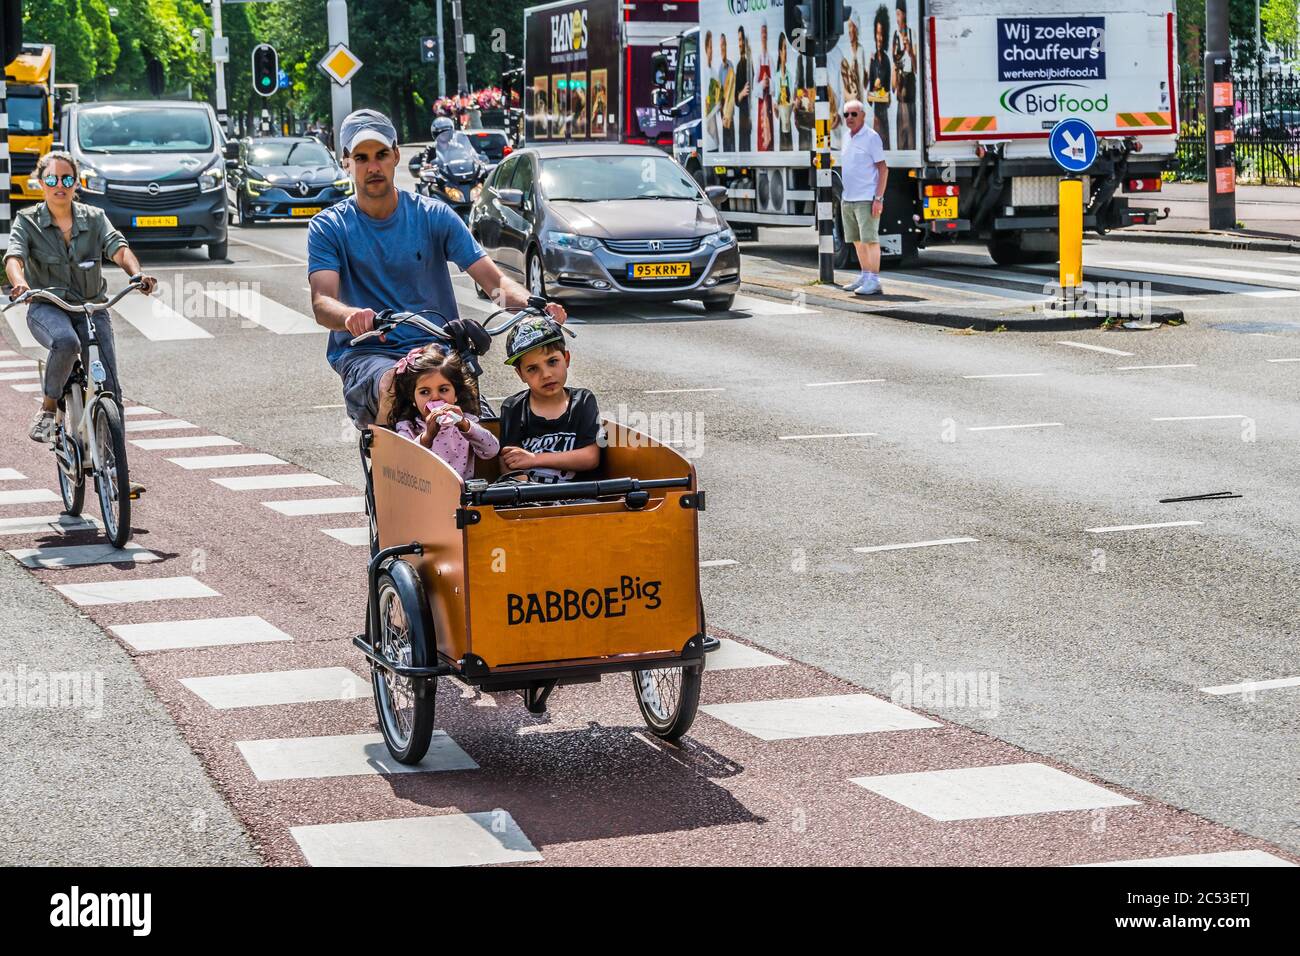 AMSTERDAM, PAYS-BAS - 18 JUILLET 2018 : un homme qui fait monter ses enfants dans les rues d'Amsterdam à vélo. Photo de haute qualité Banque D'Images